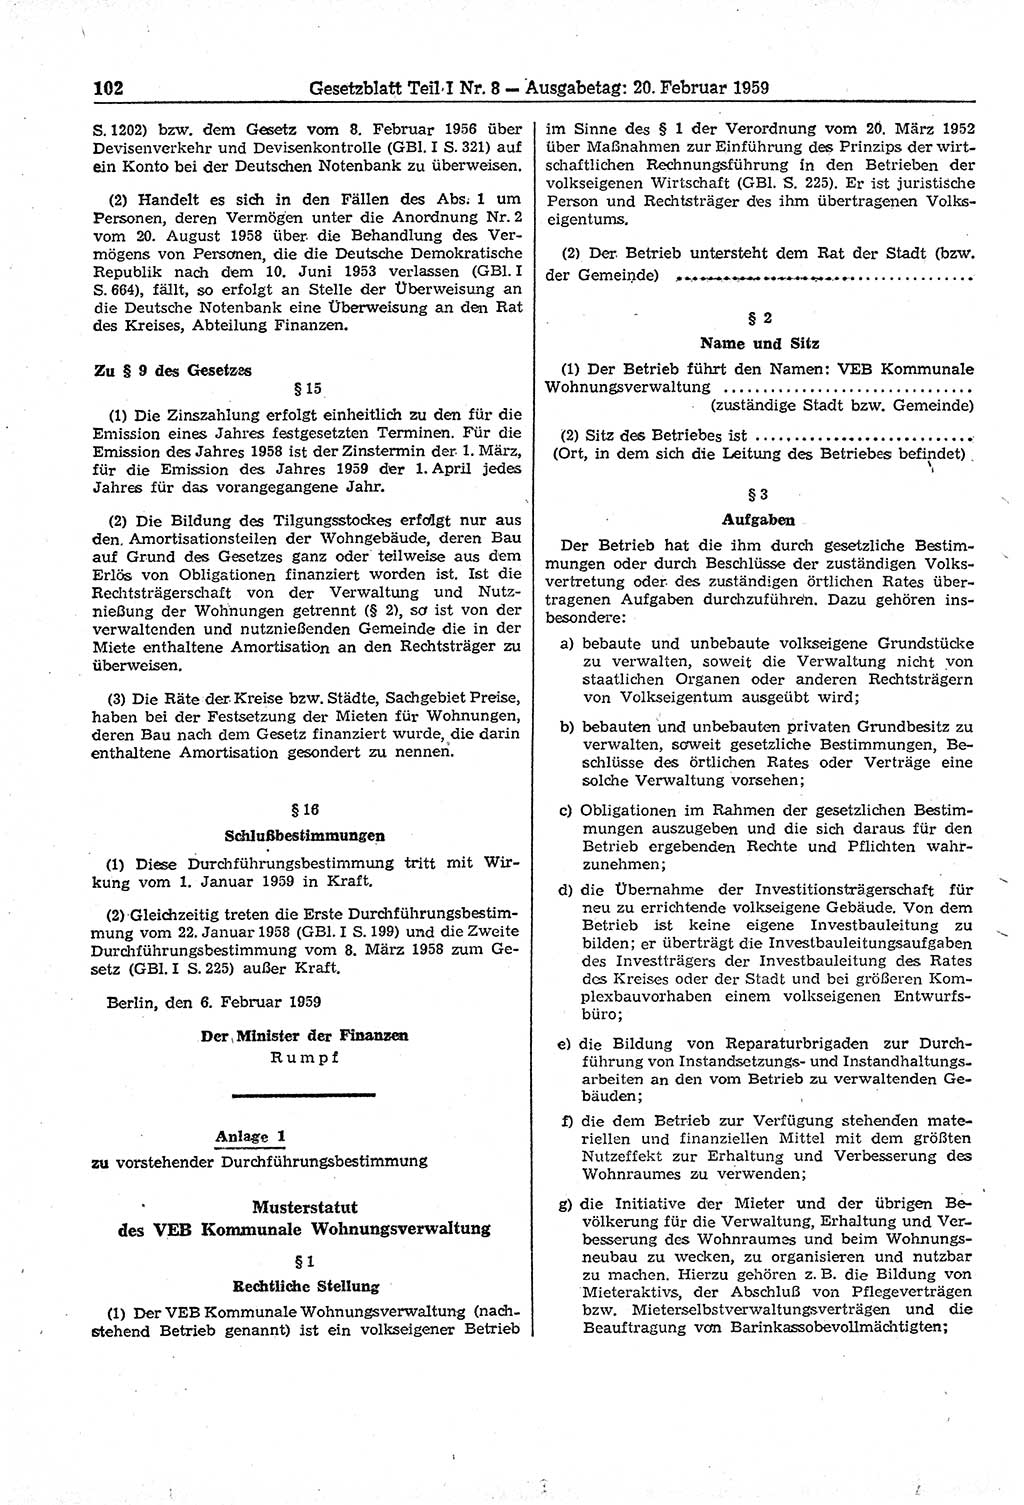 Gesetzblatt (GBl.) der Deutschen Demokratischen Republik (DDR) Teil Ⅰ 1959, Seite 102 (GBl. DDR Ⅰ 1959, S. 102)